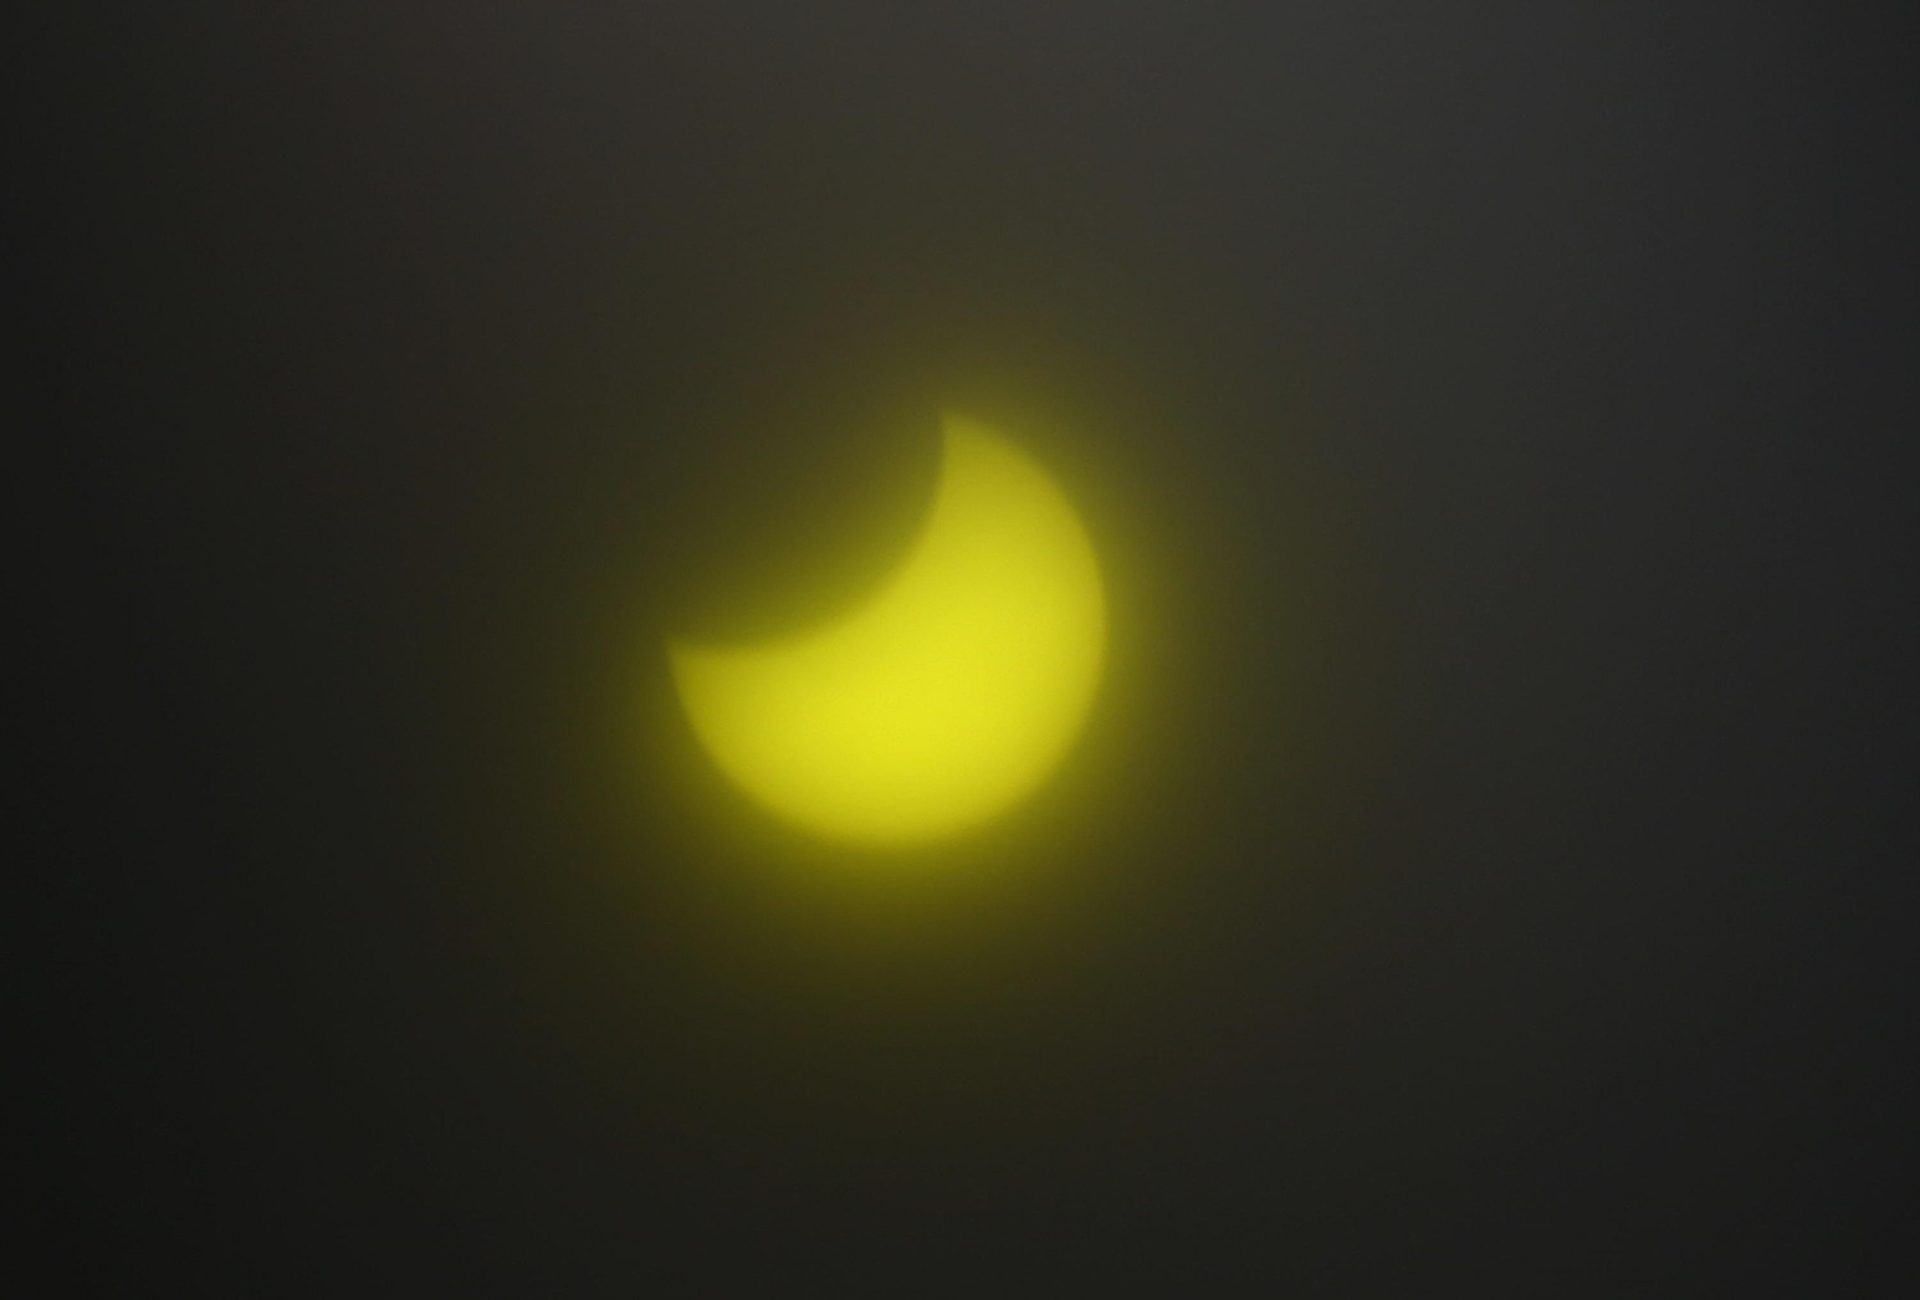 Eclipse solar anular visto no céu de Manaus - Foto: Edmar Barros/Futura Press/Estadão Conteúdo